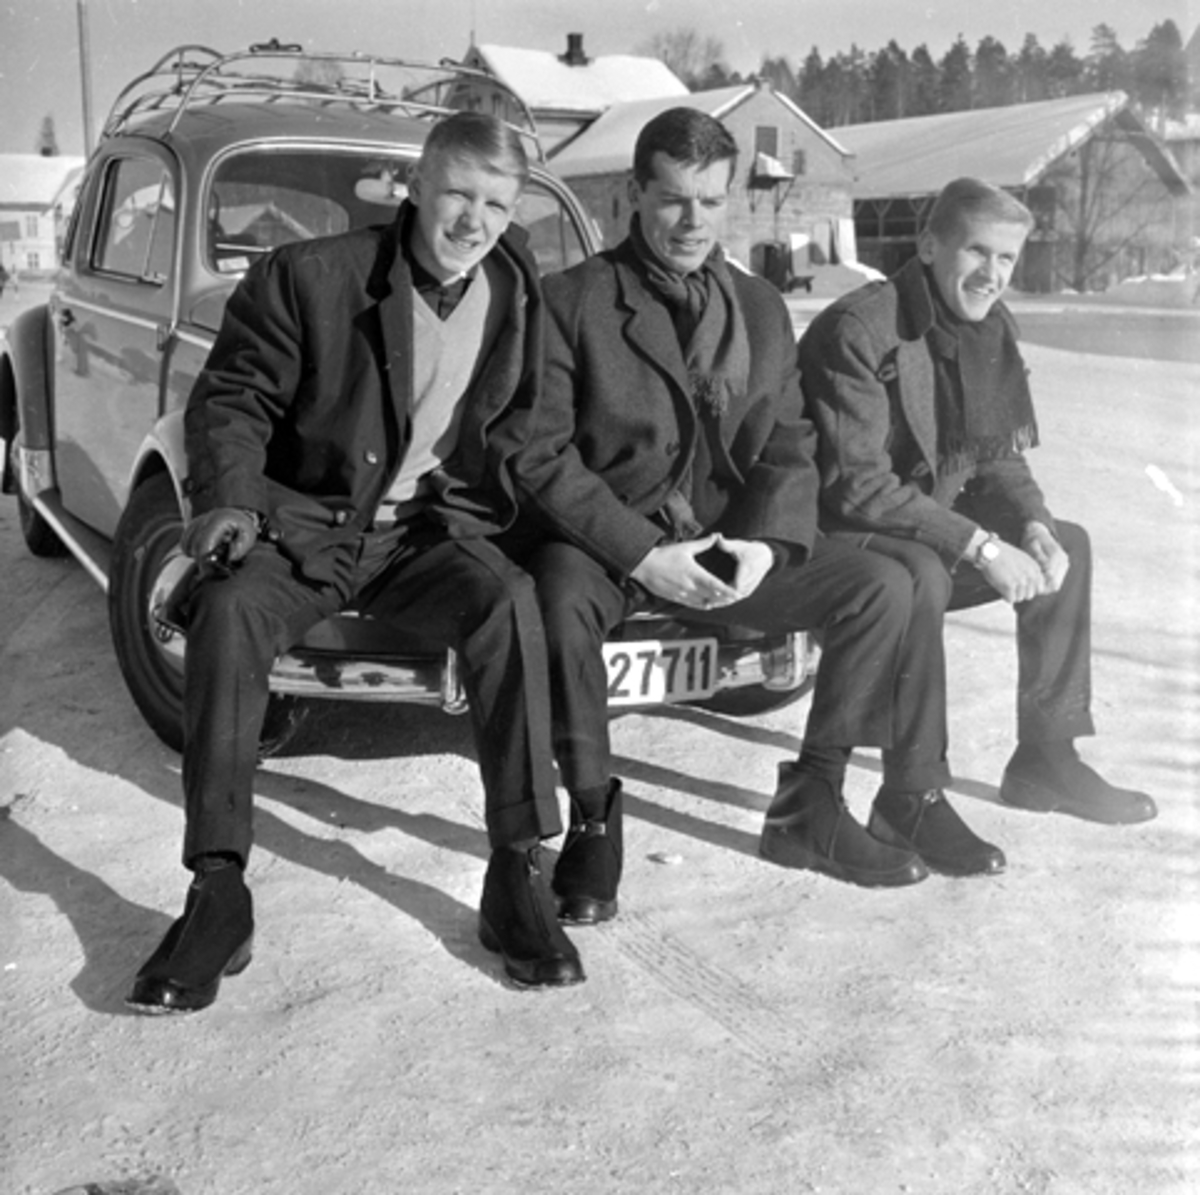 Elverum håndball, Arnulf Bæk, Thor Nohr og Finn Urdal ("bastanten"), ved gamle Shell-tomta (Torget). Steinbua i bakgrunnen.